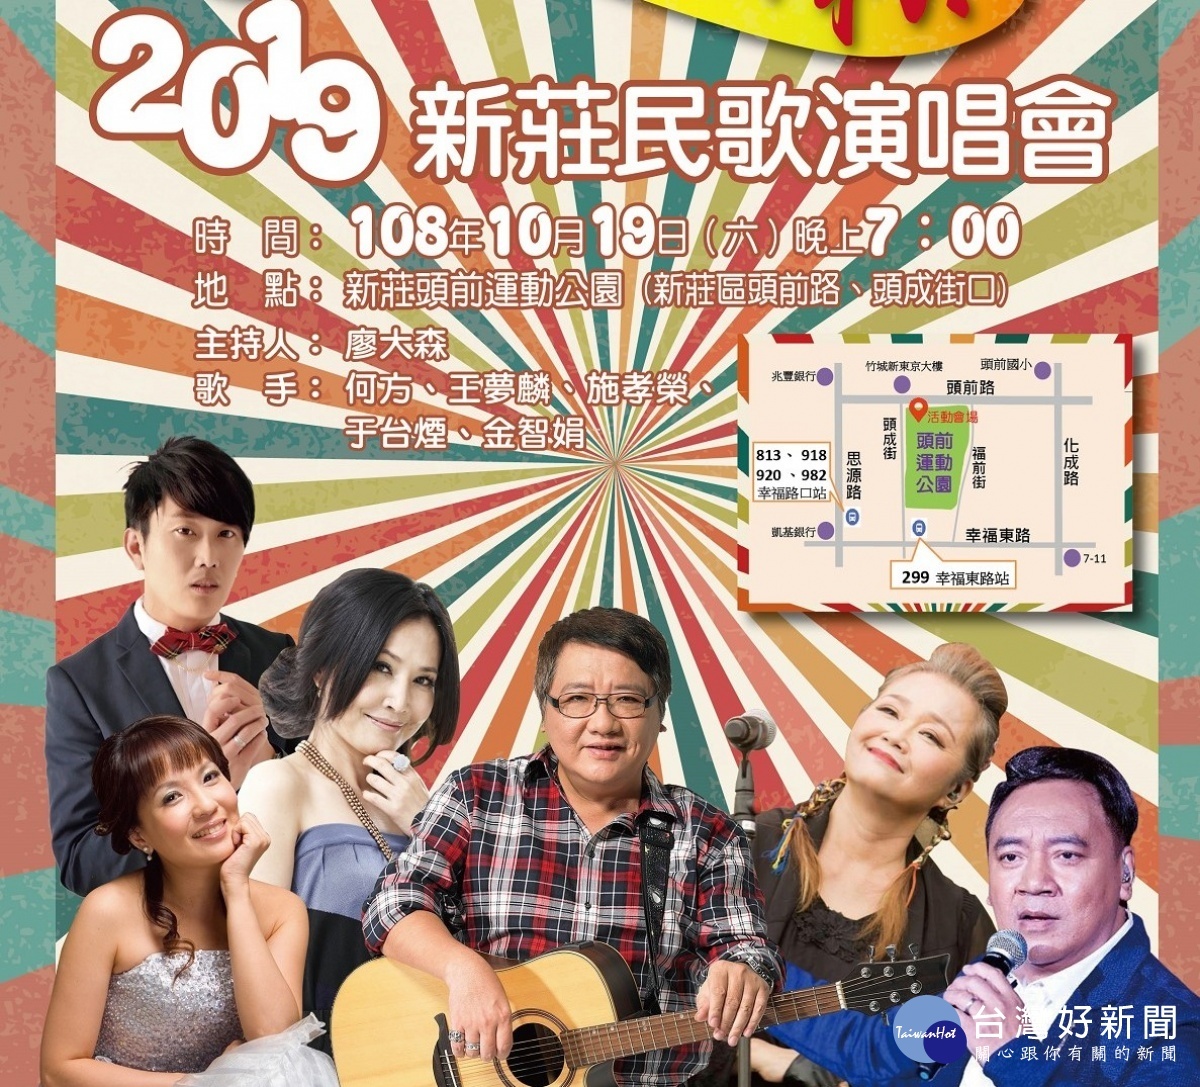 新莊民歌演唱會10 19登場于台煙等民歌手登台演出 台灣好新聞taiwanhot Net